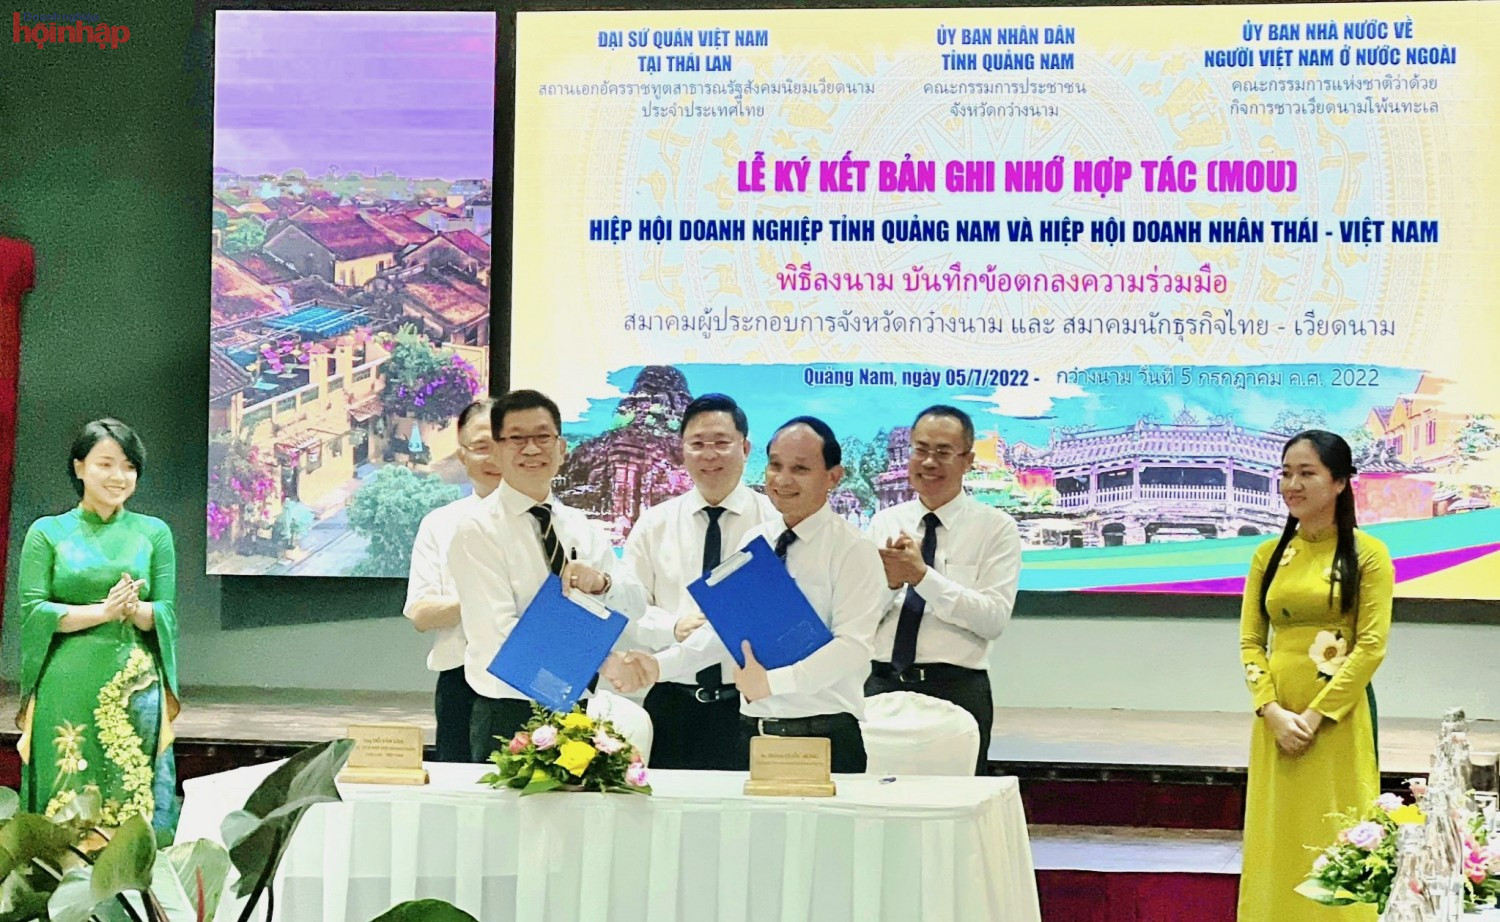 Tại Diễn đàn, Hiệp hội Doanh nghiệp Quảng Nam và Hiệp hội Doanh nhân Thái – Việt Nam đã cùng ký kết Bản ghi nhớ hợp tác kết nối doanh nghiệp Quảng Nam- Thái Lan